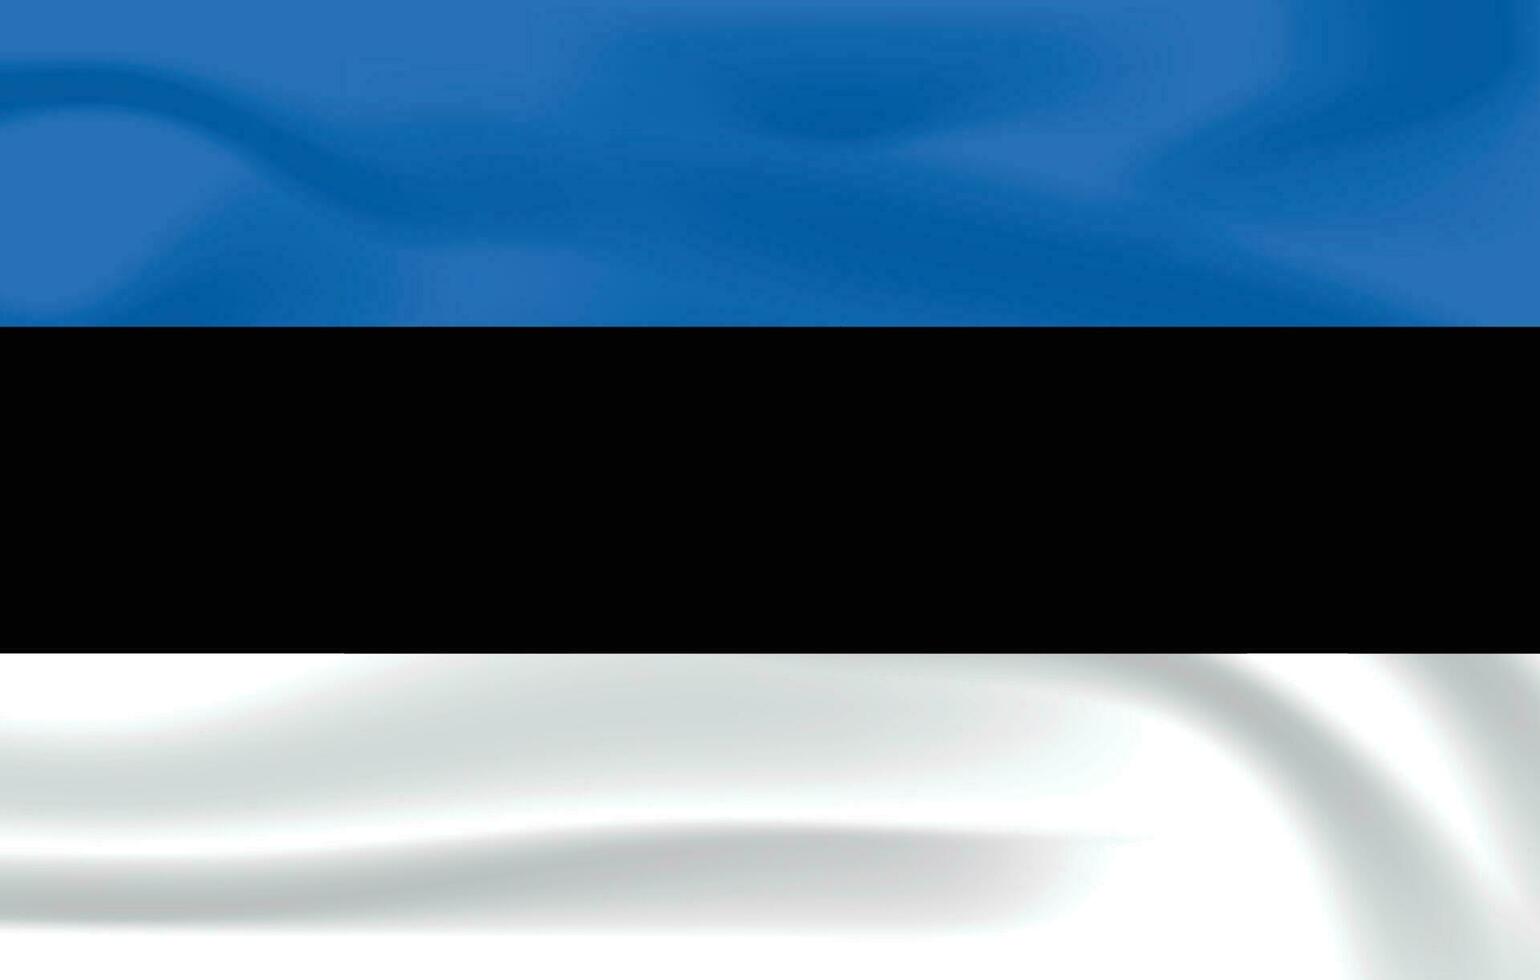 réaliste Estonie drapeau nationale drapeau de Estonie vecteur